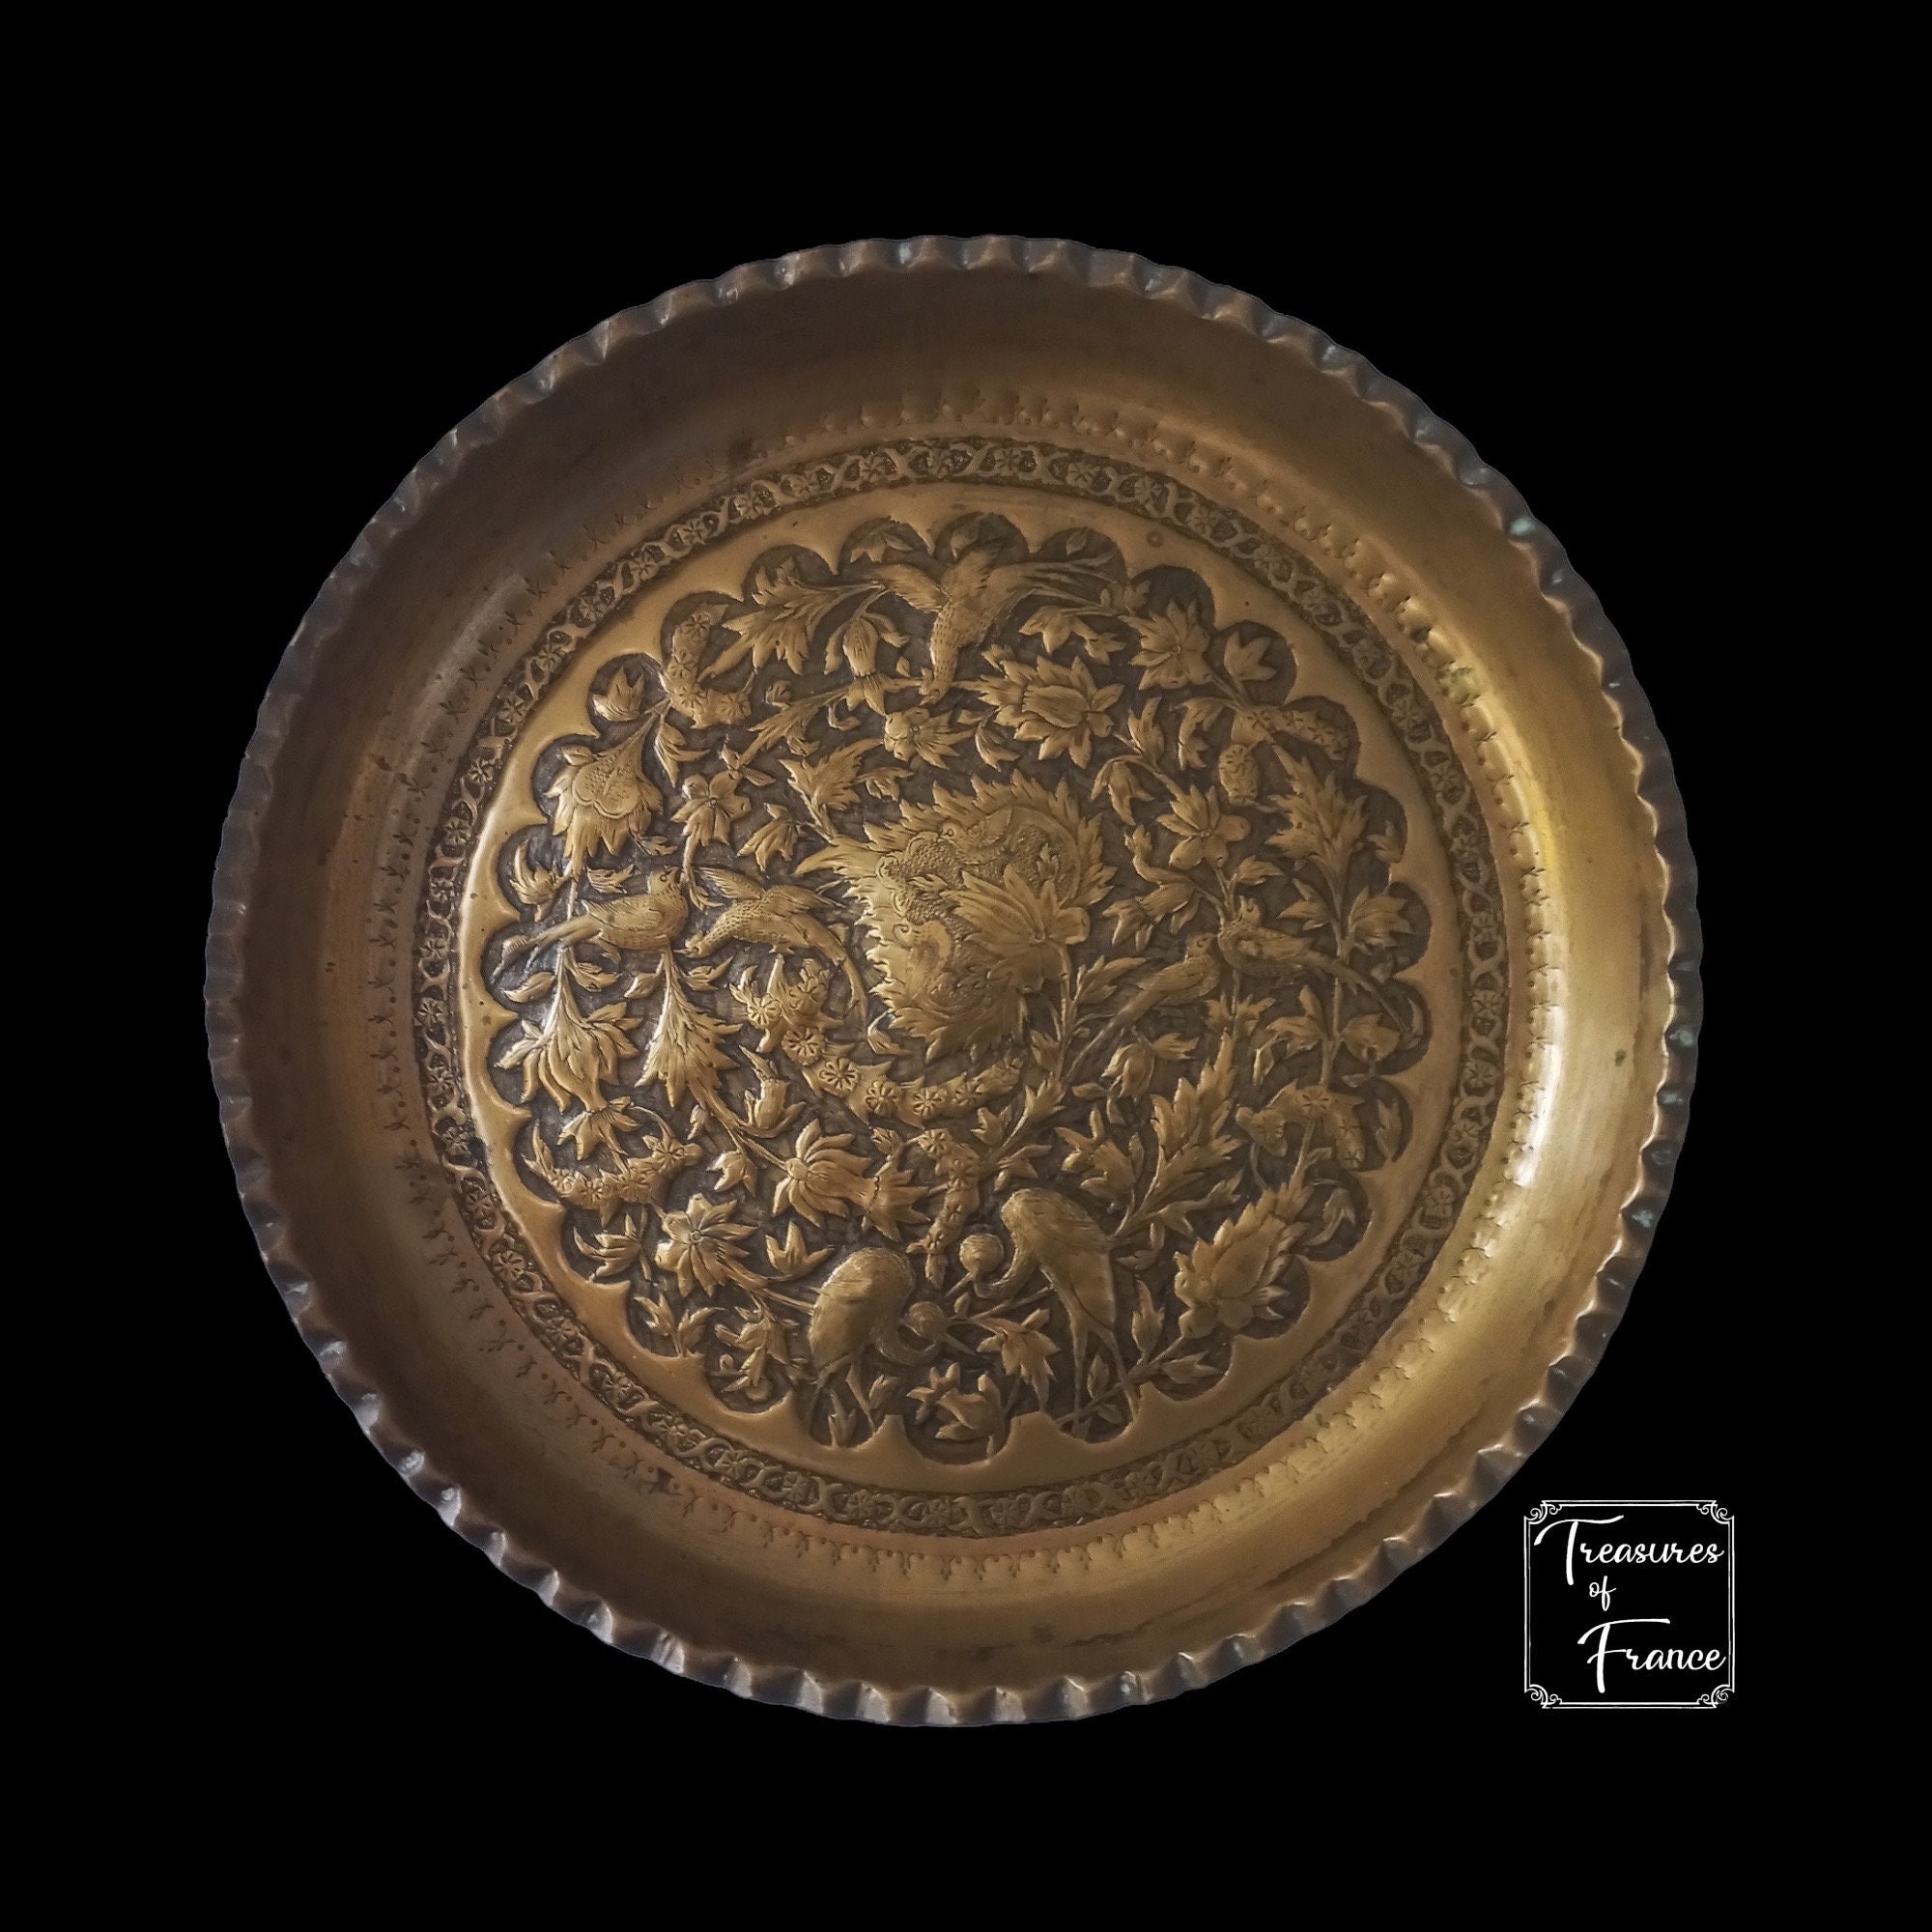 Antik Islamische Messing Tablett Silber & Kupfer Eingelegt Wandbehang Deko